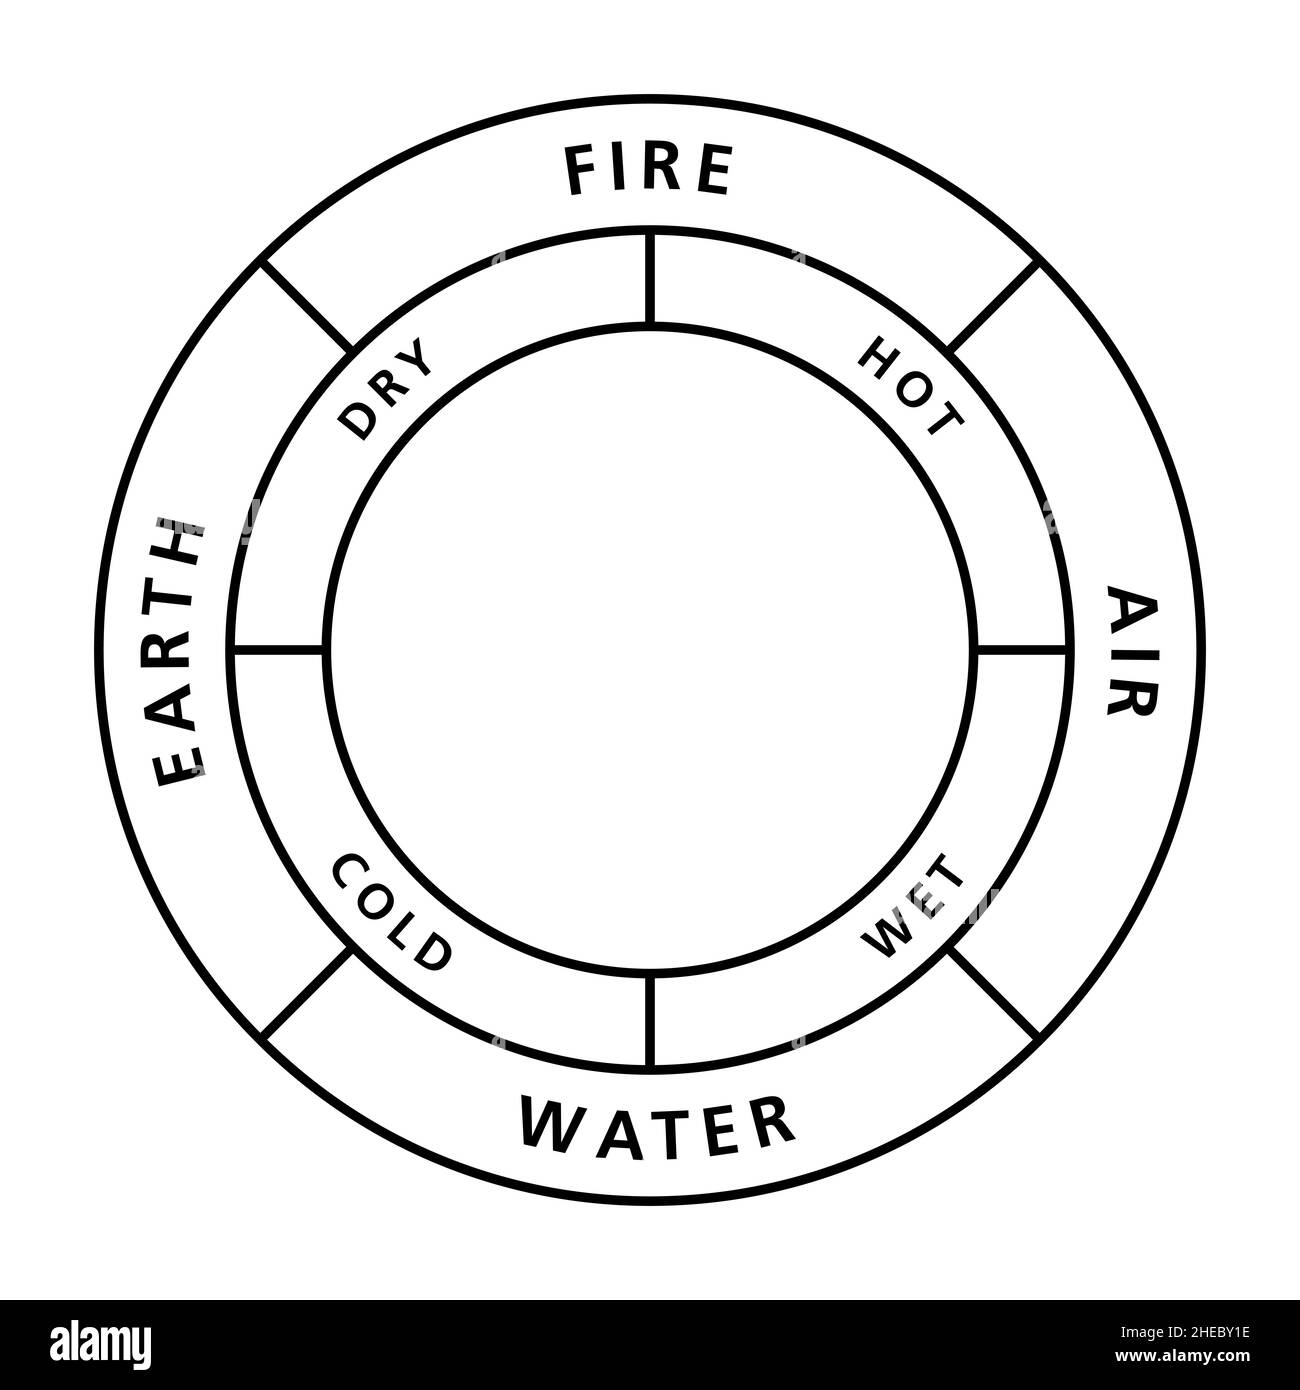 Cerchio dei quattro elementi classici fuoco, terra, acqua e aria, con le loro qualità caldo, secco, freddo e bagnato. Foto Stock